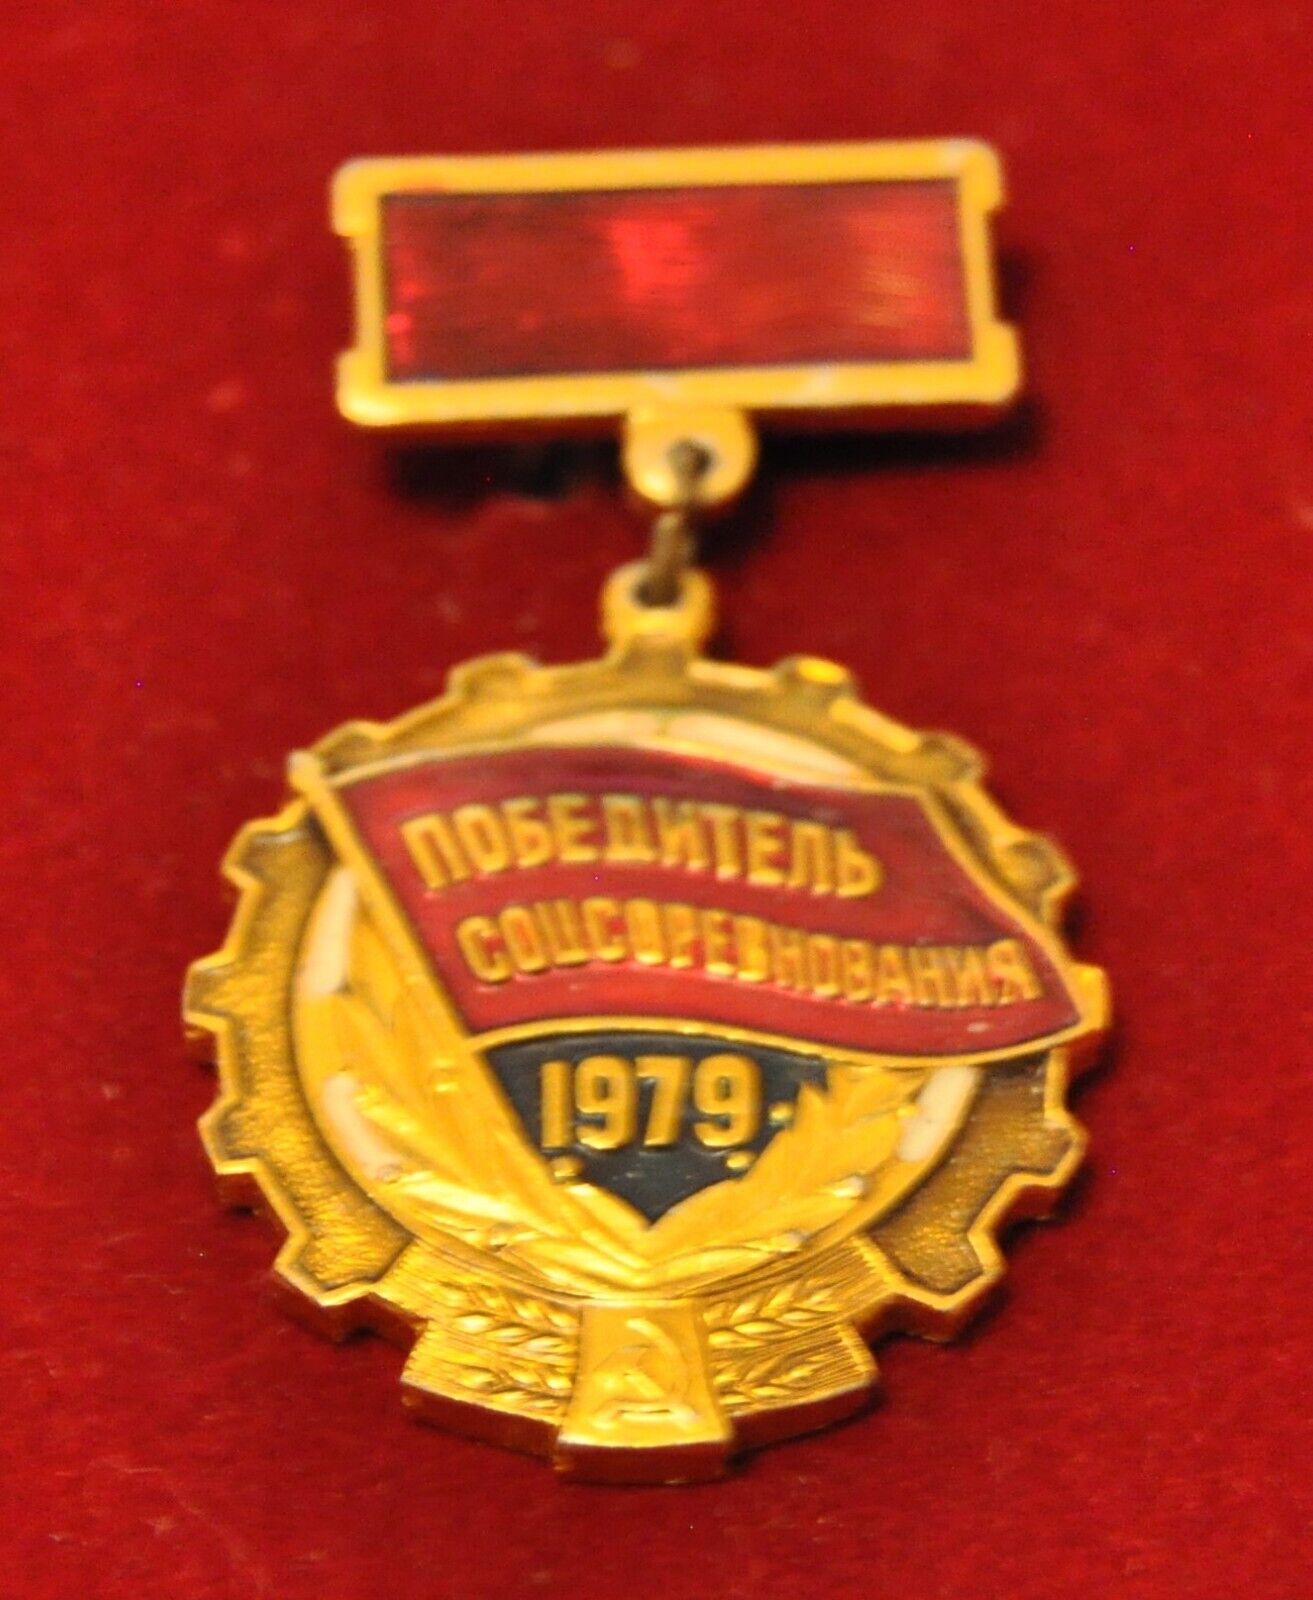 1979 Soviet Russian USSR Socialist Competition Winner Pinback Medal Award Badge